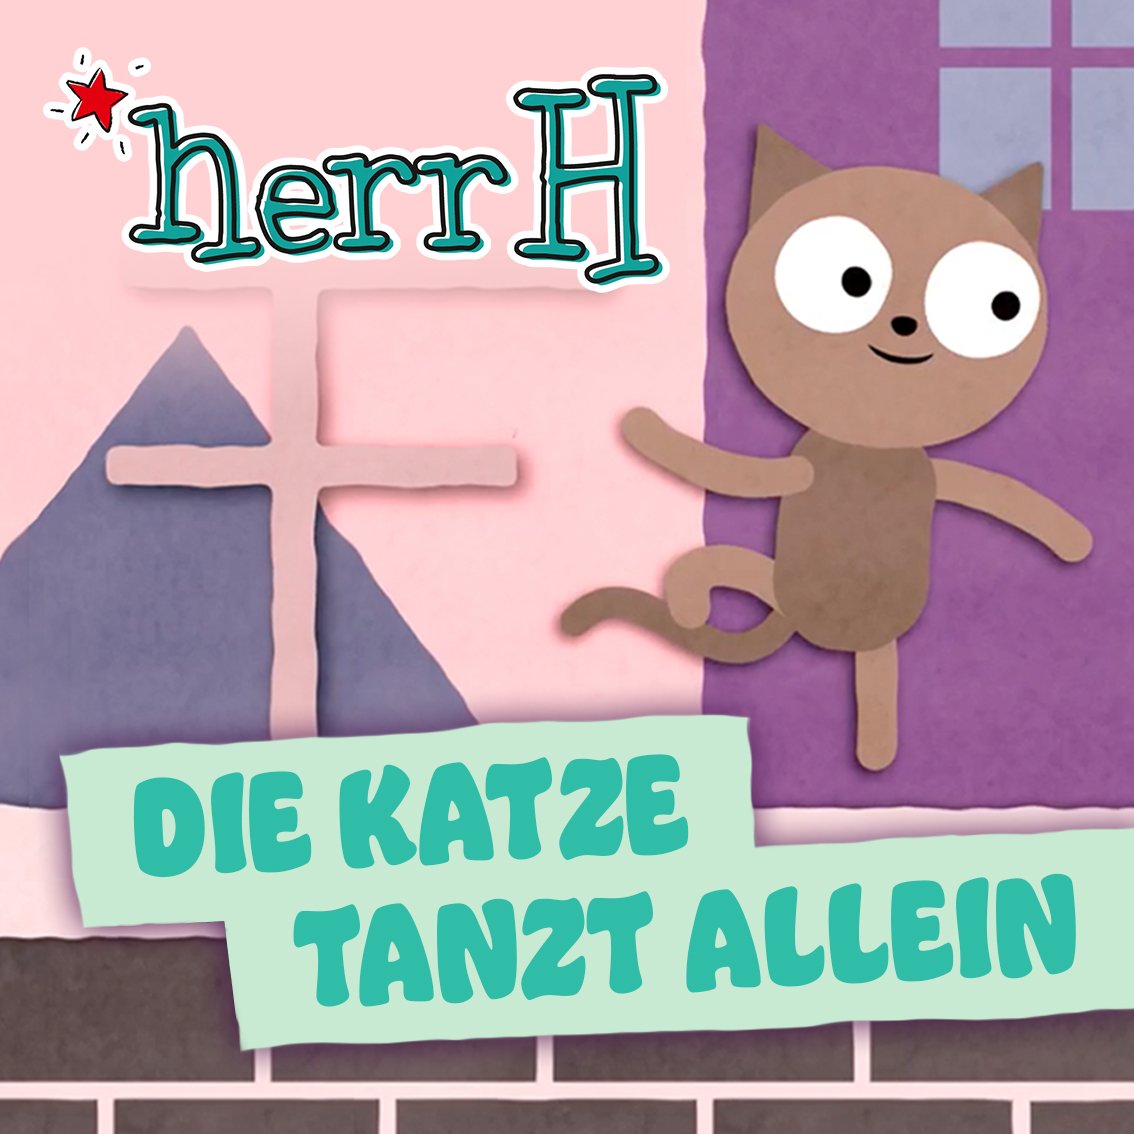 herrH - Die Katze tanzt allein (Single)